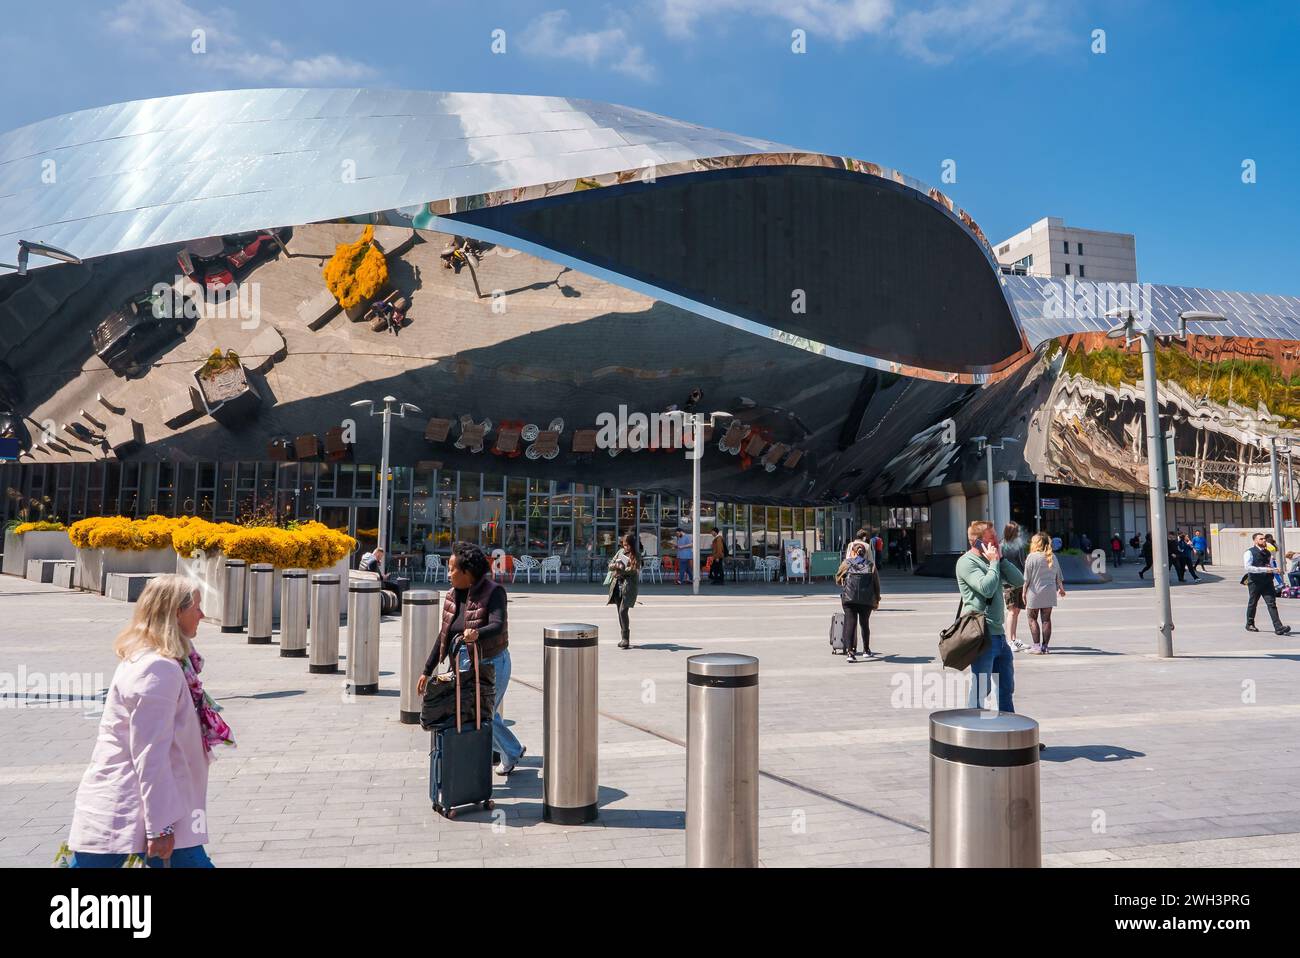 Entdecken Sie modernes urbanes Leben und futuristische Architektur in Birmingham, Großbritannien Stockfoto